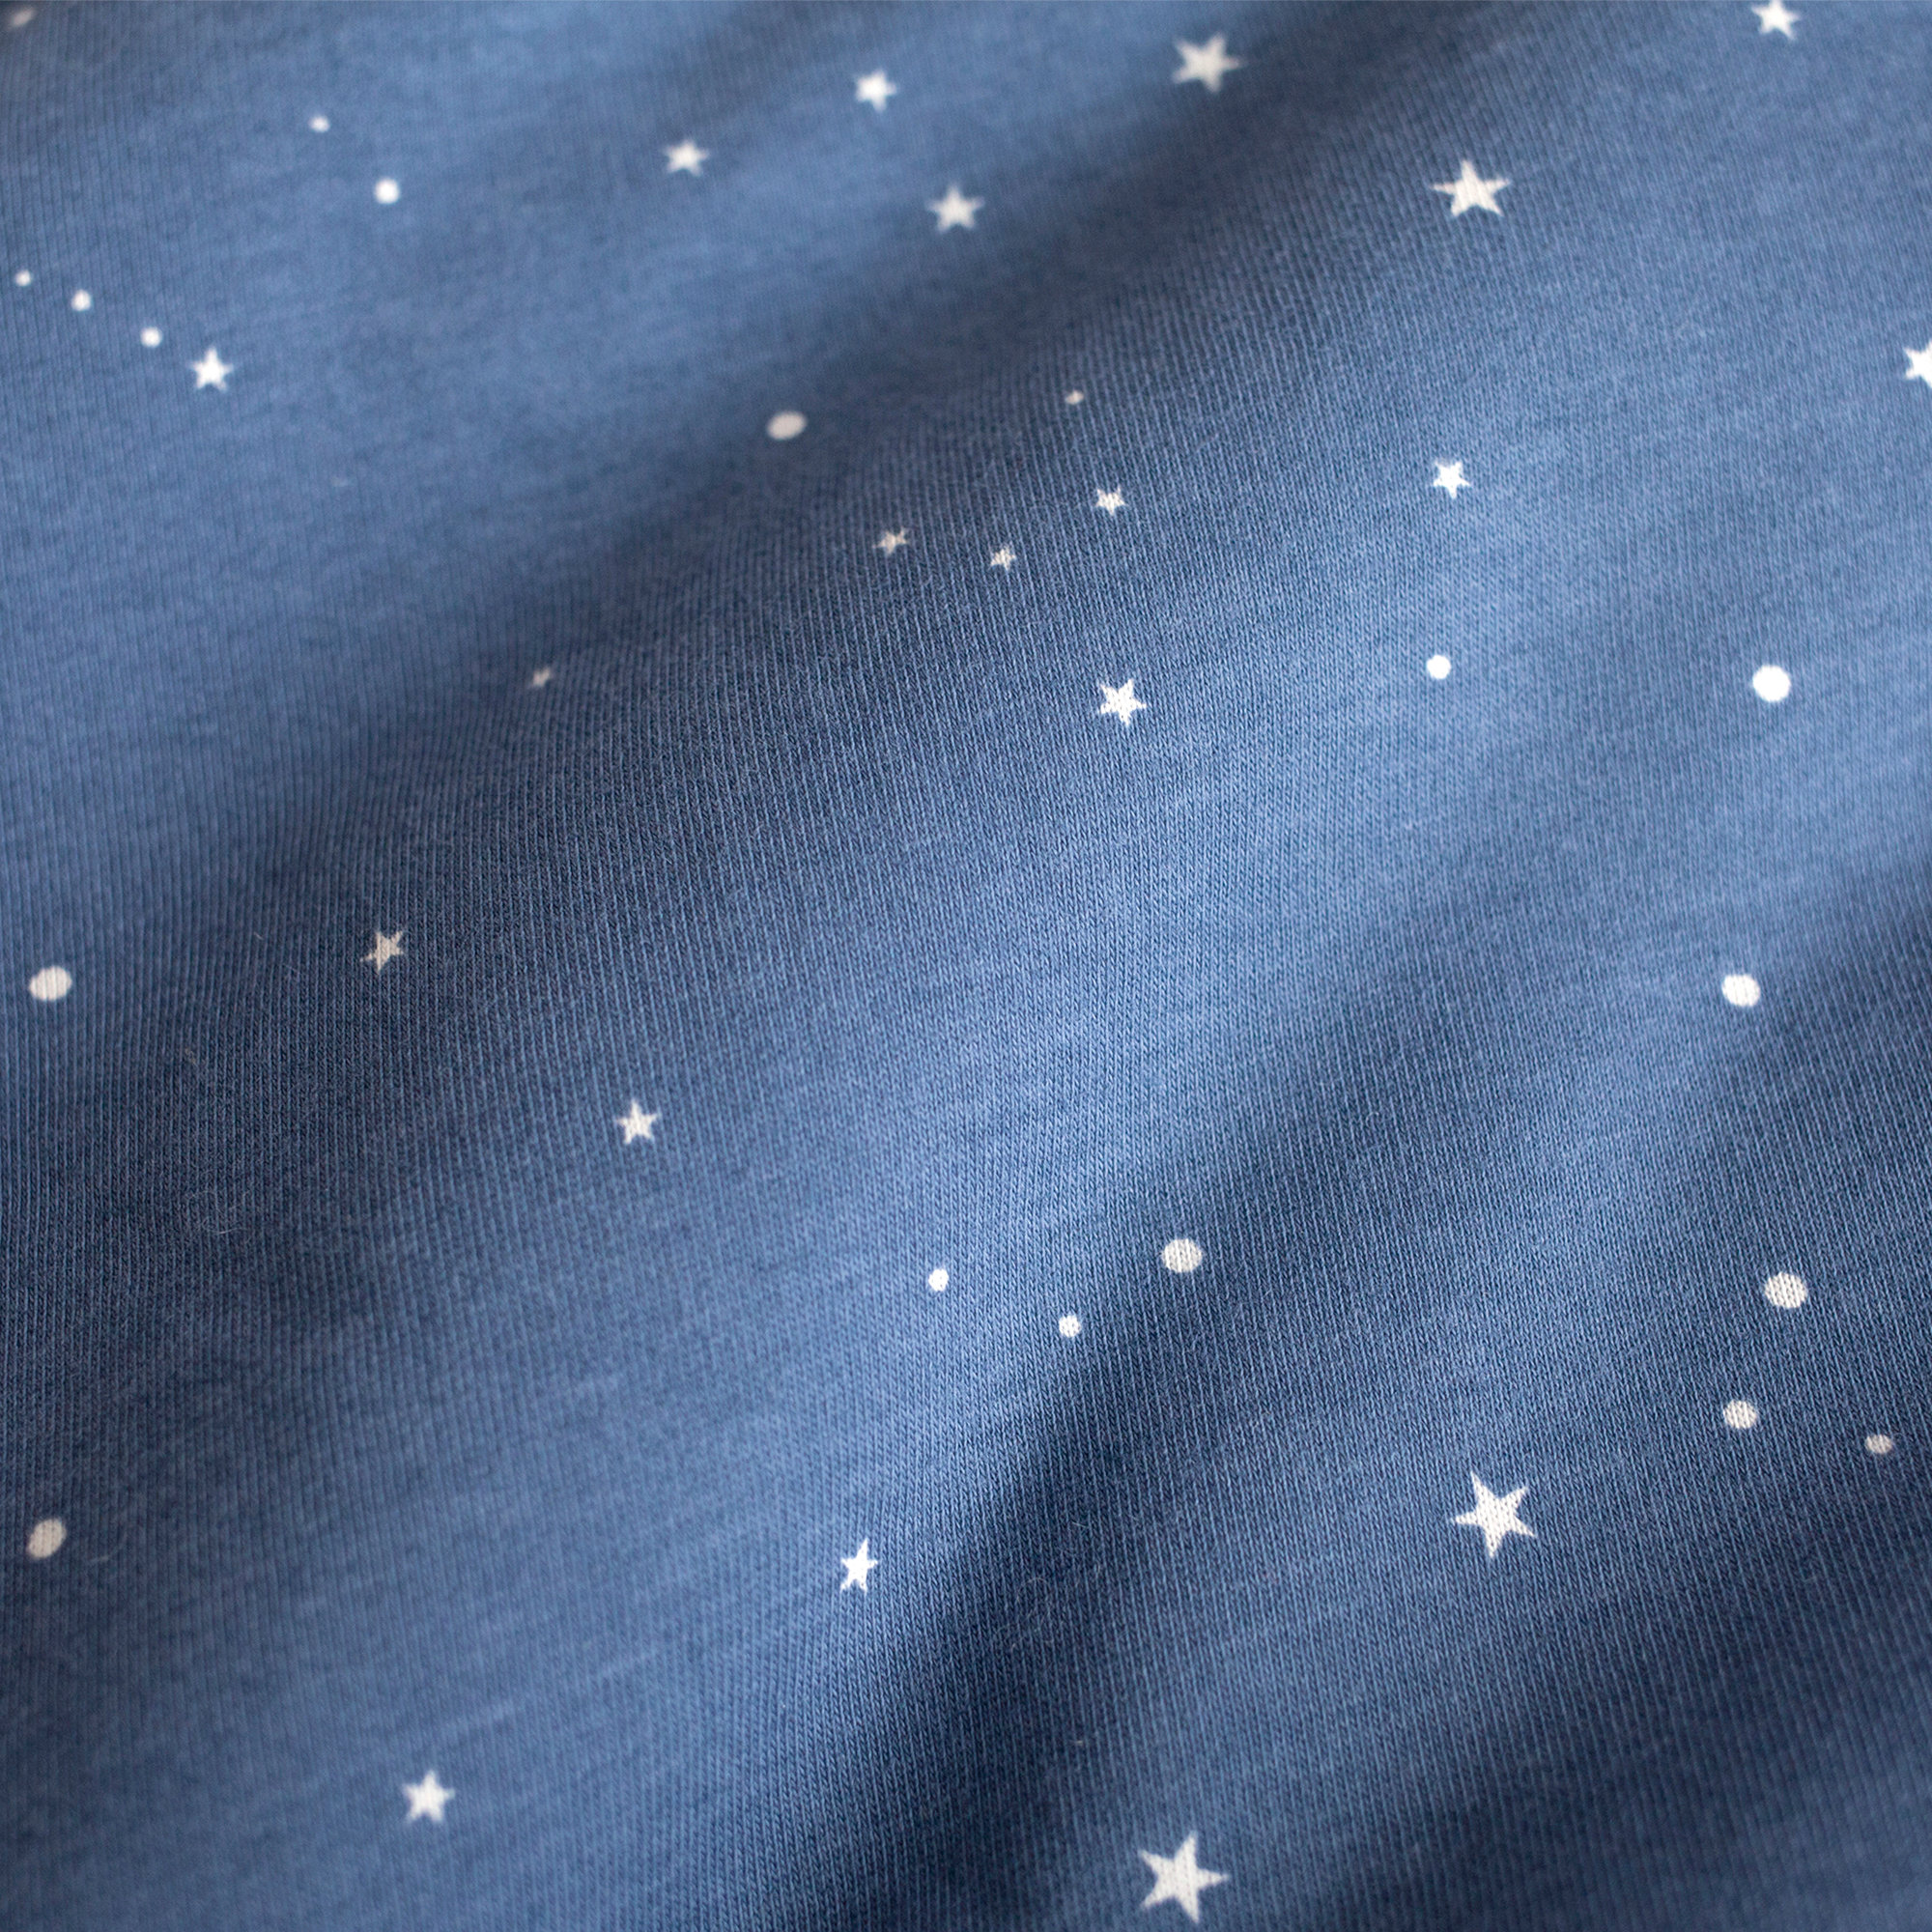 Playpen sheet Jersey 75x95cm STARY Little stars print shadeOutlet